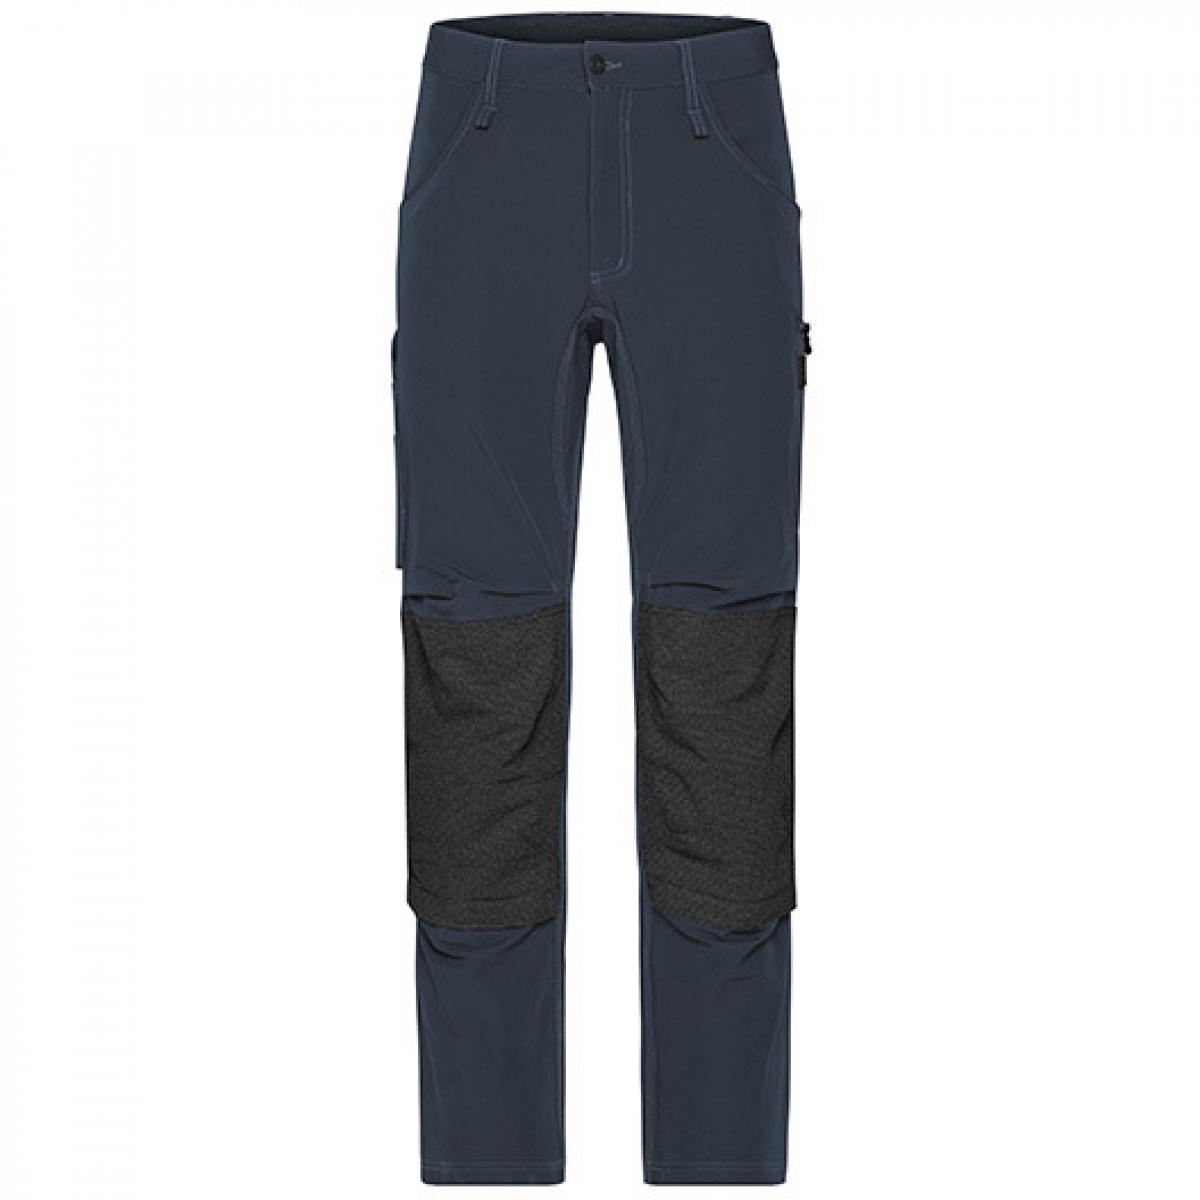 Hersteller: James+Nicholson Herstellernummer: JN1813 Artikelbezeichnung: Workwear Pants 4-Way Stretch Slim Line / Arbeitshose Farbe: Carbon